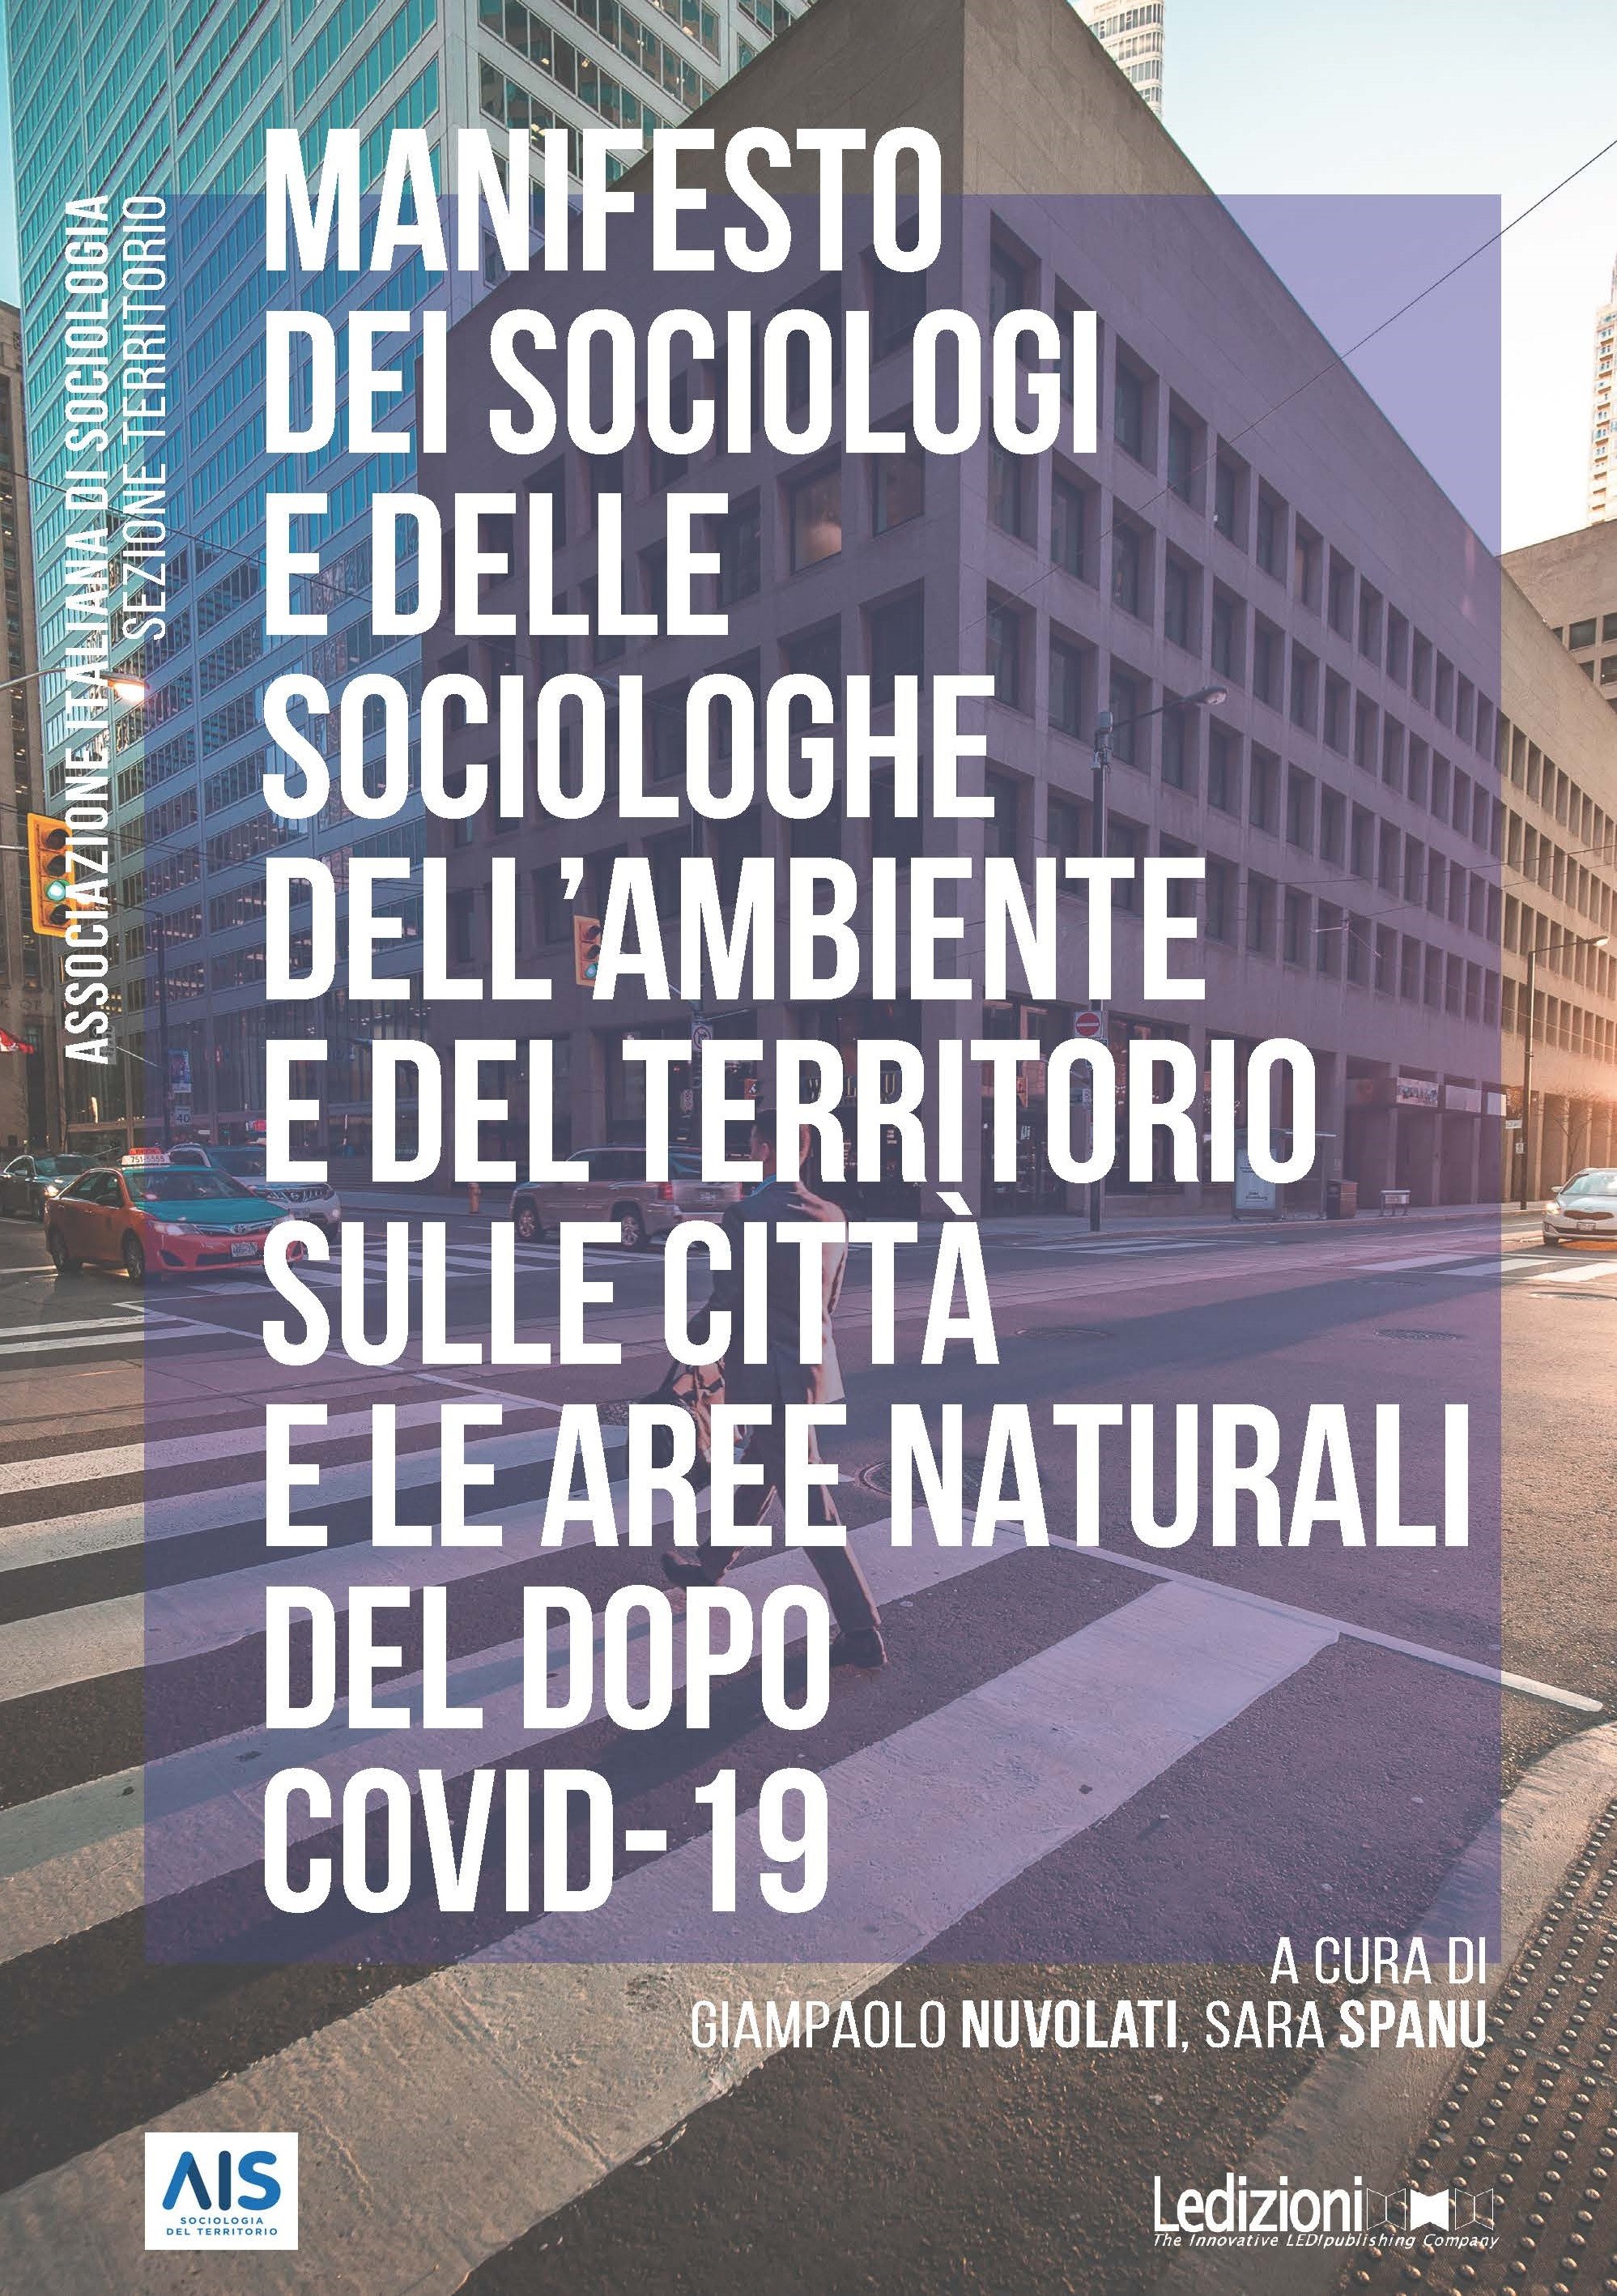 Manifesto dei sociologi e delle sociologhe dell’ambiente e del territorio sulle città e le aree naturali del dopo Covid-19 - Librerie.coop